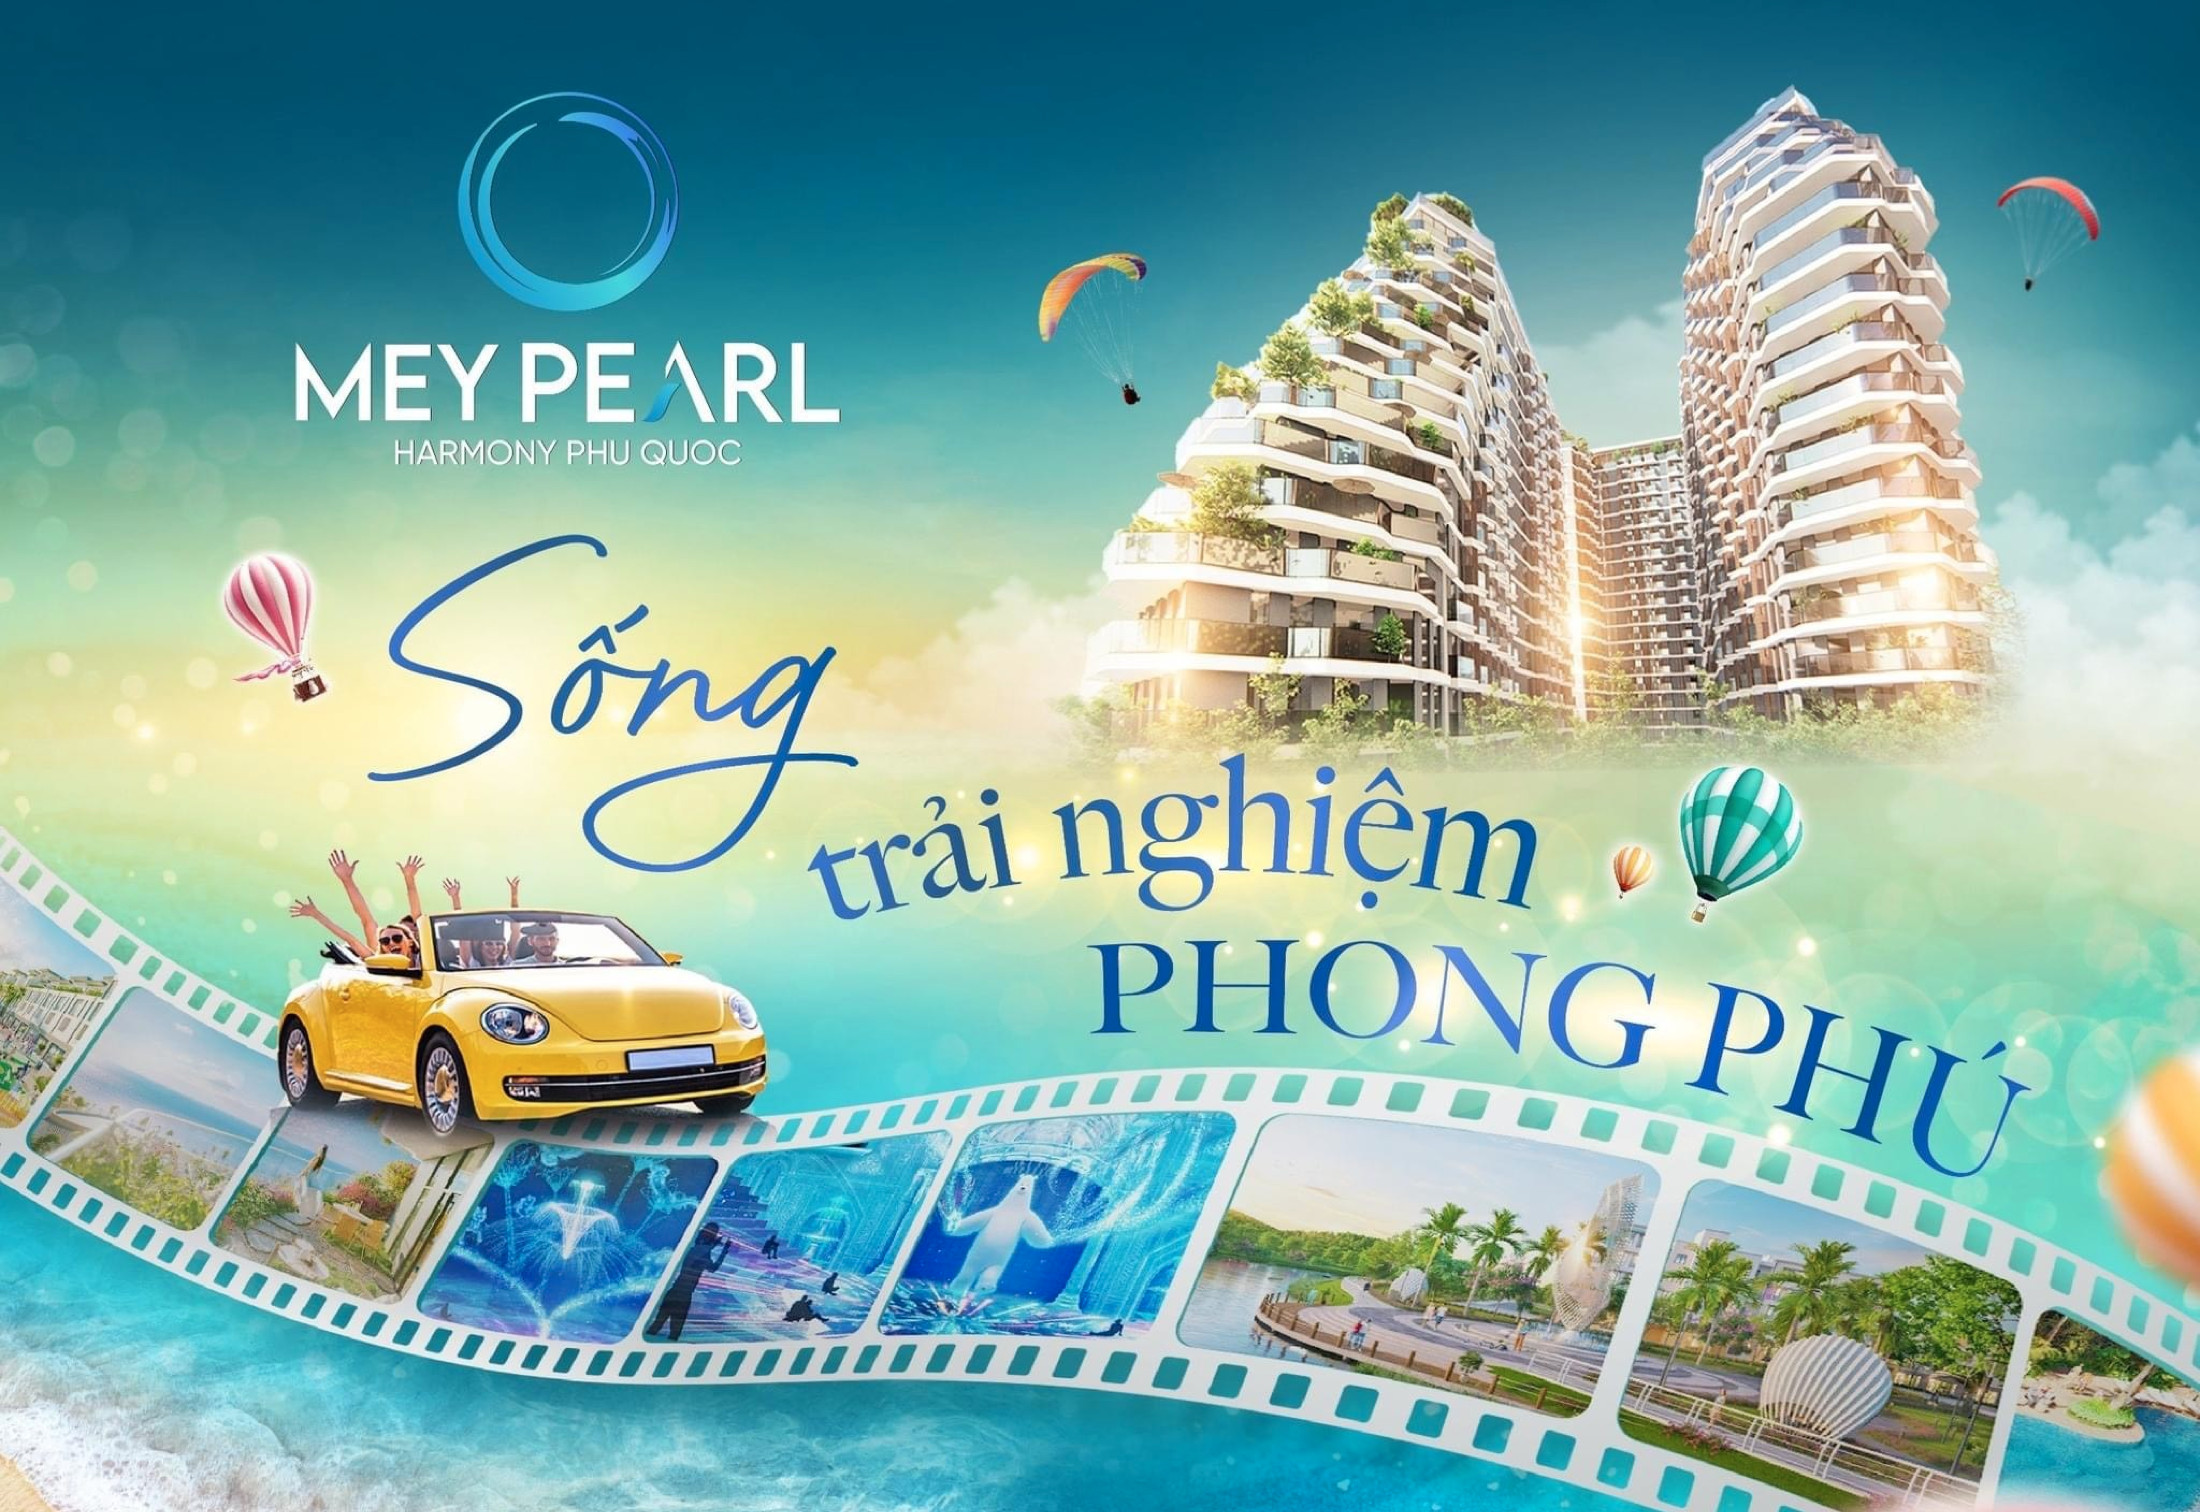 Căn hộ cao cấp - sở hữu lâu dài - Chung Cư Meypearl Harmony Phú Quốc - Ảnh chính